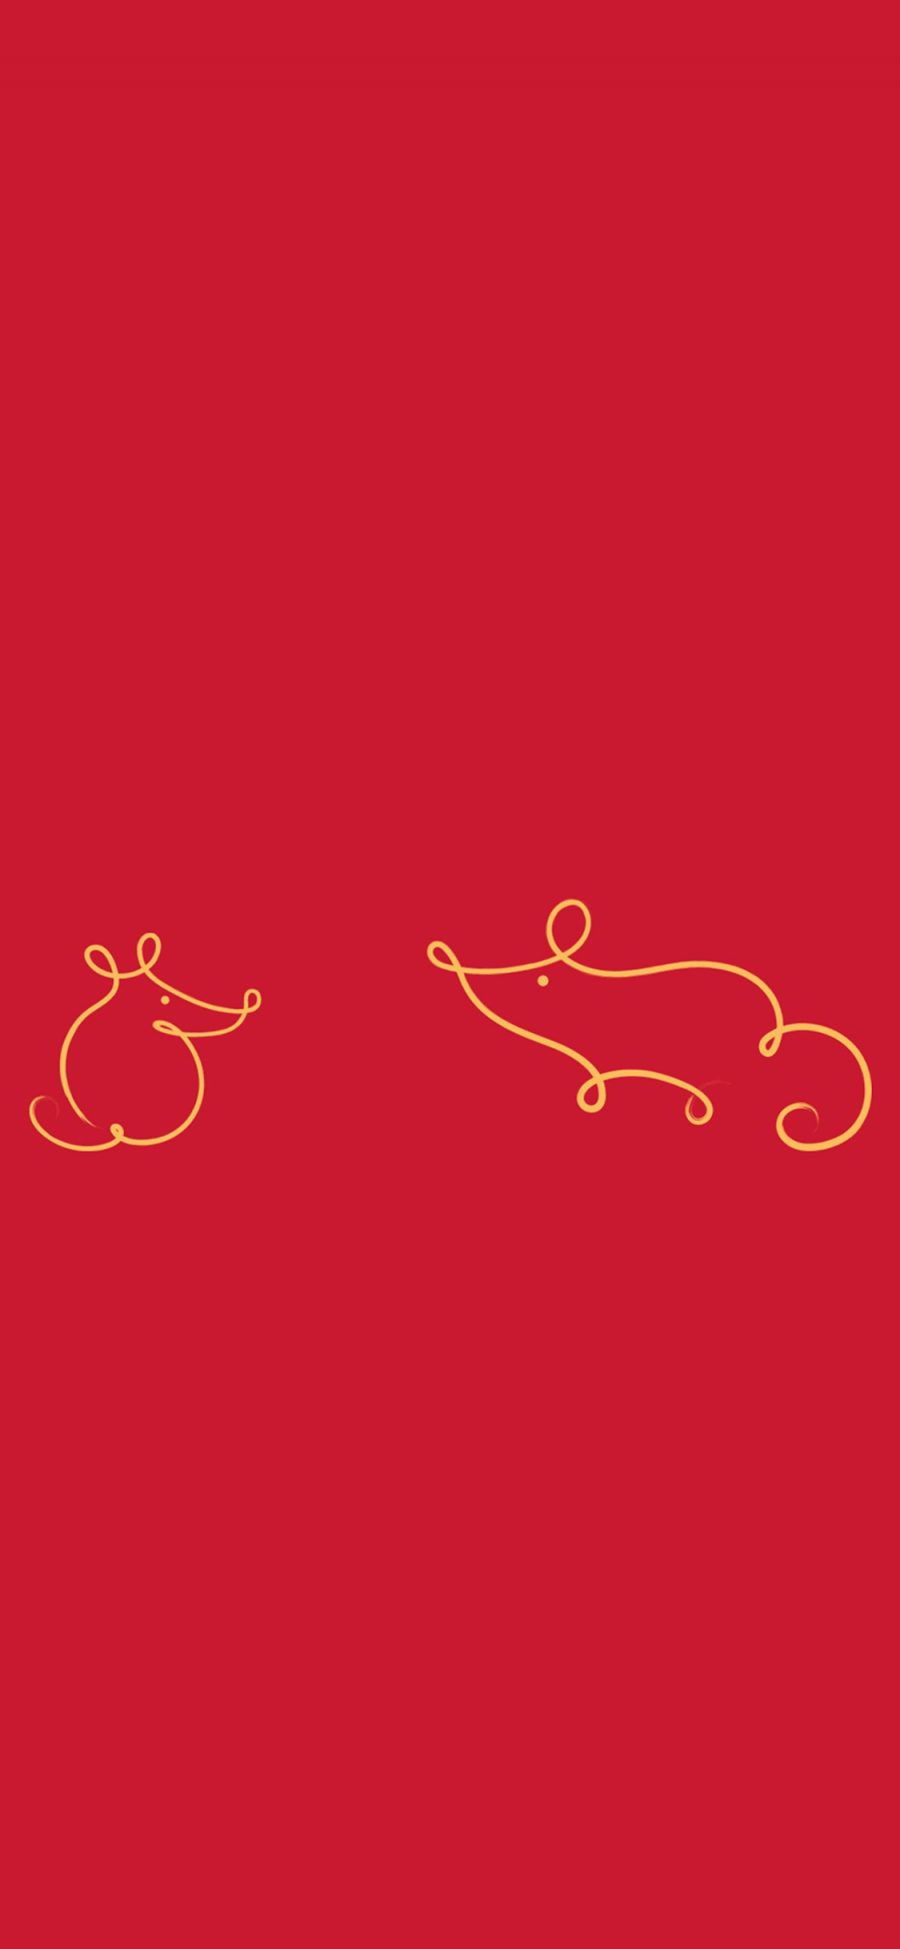 [2436×1125]老鼠 红色 简笔画 苹果手机动漫壁纸图片